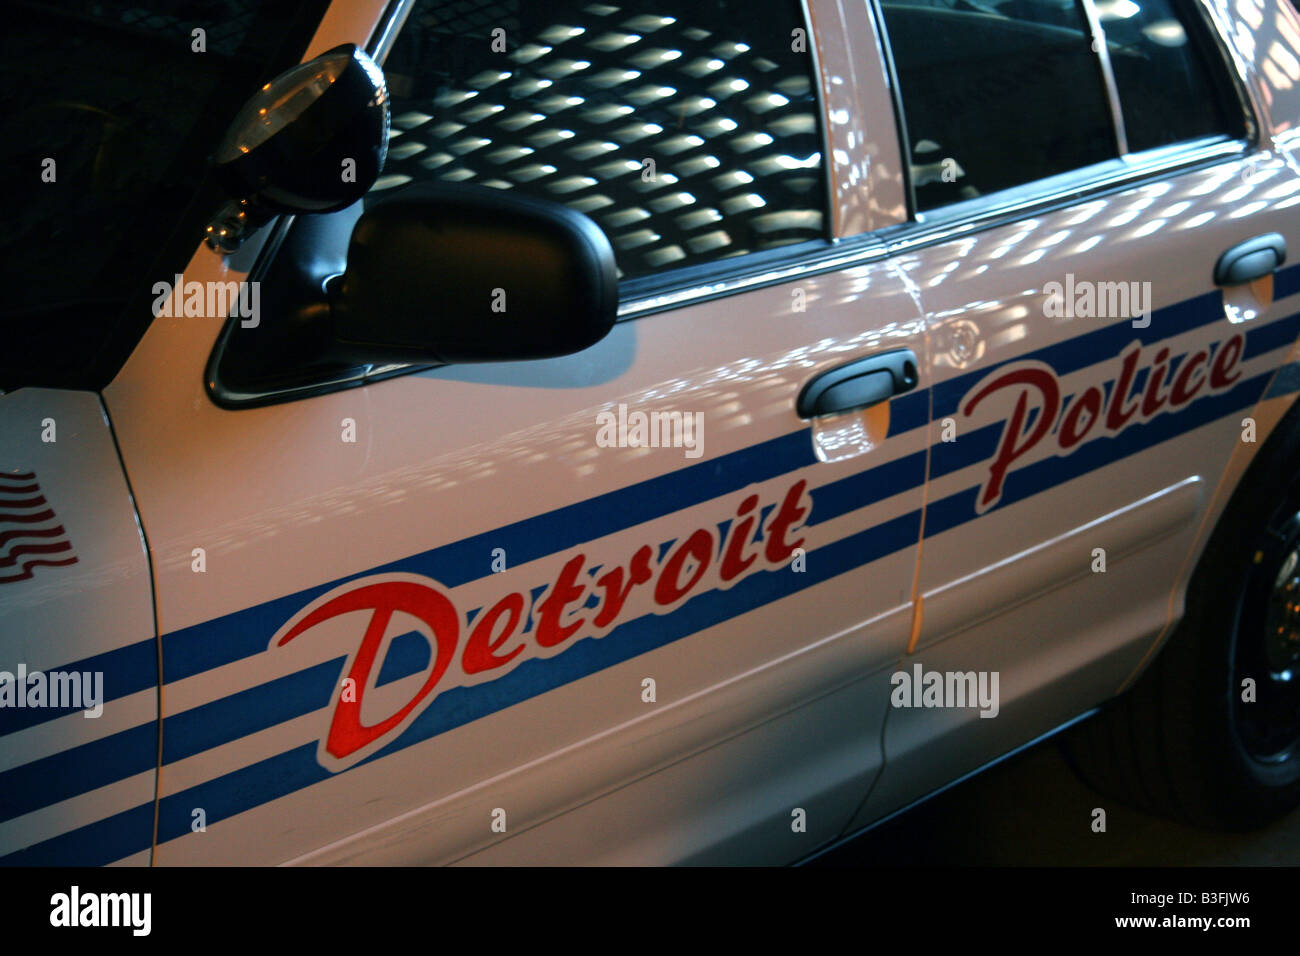 La Detroit del Dipartimento di Polizia di auto di pattuglia Foto Stock